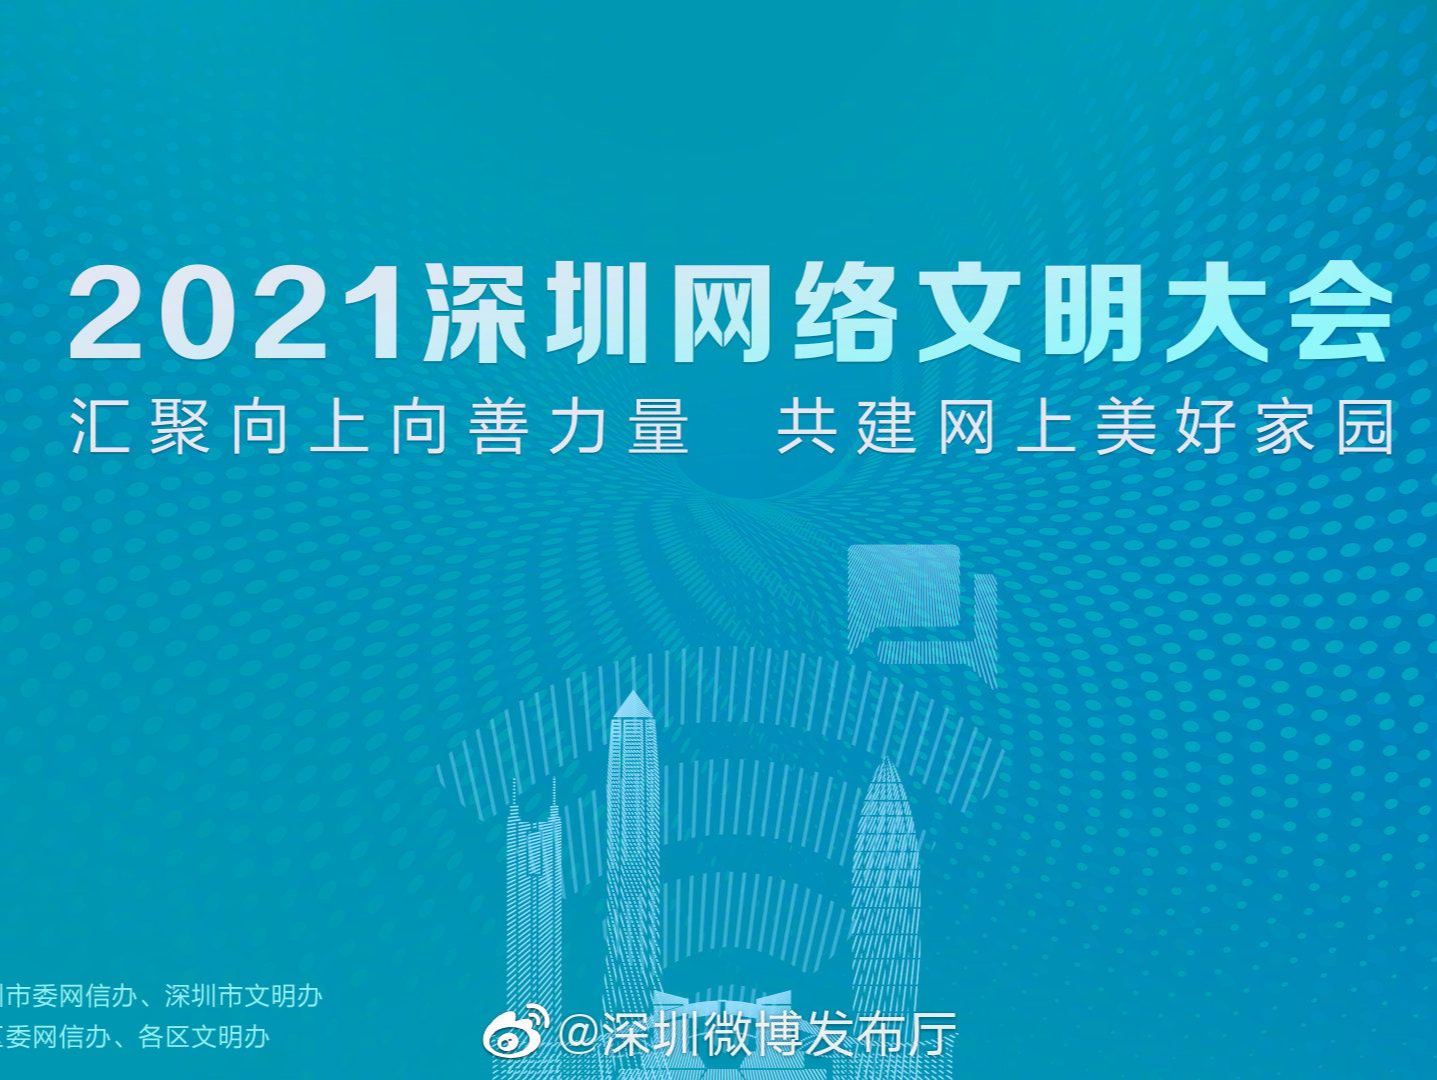 2021深圳网络文明大会：汇聚向上向善力量 共建网上美好家园